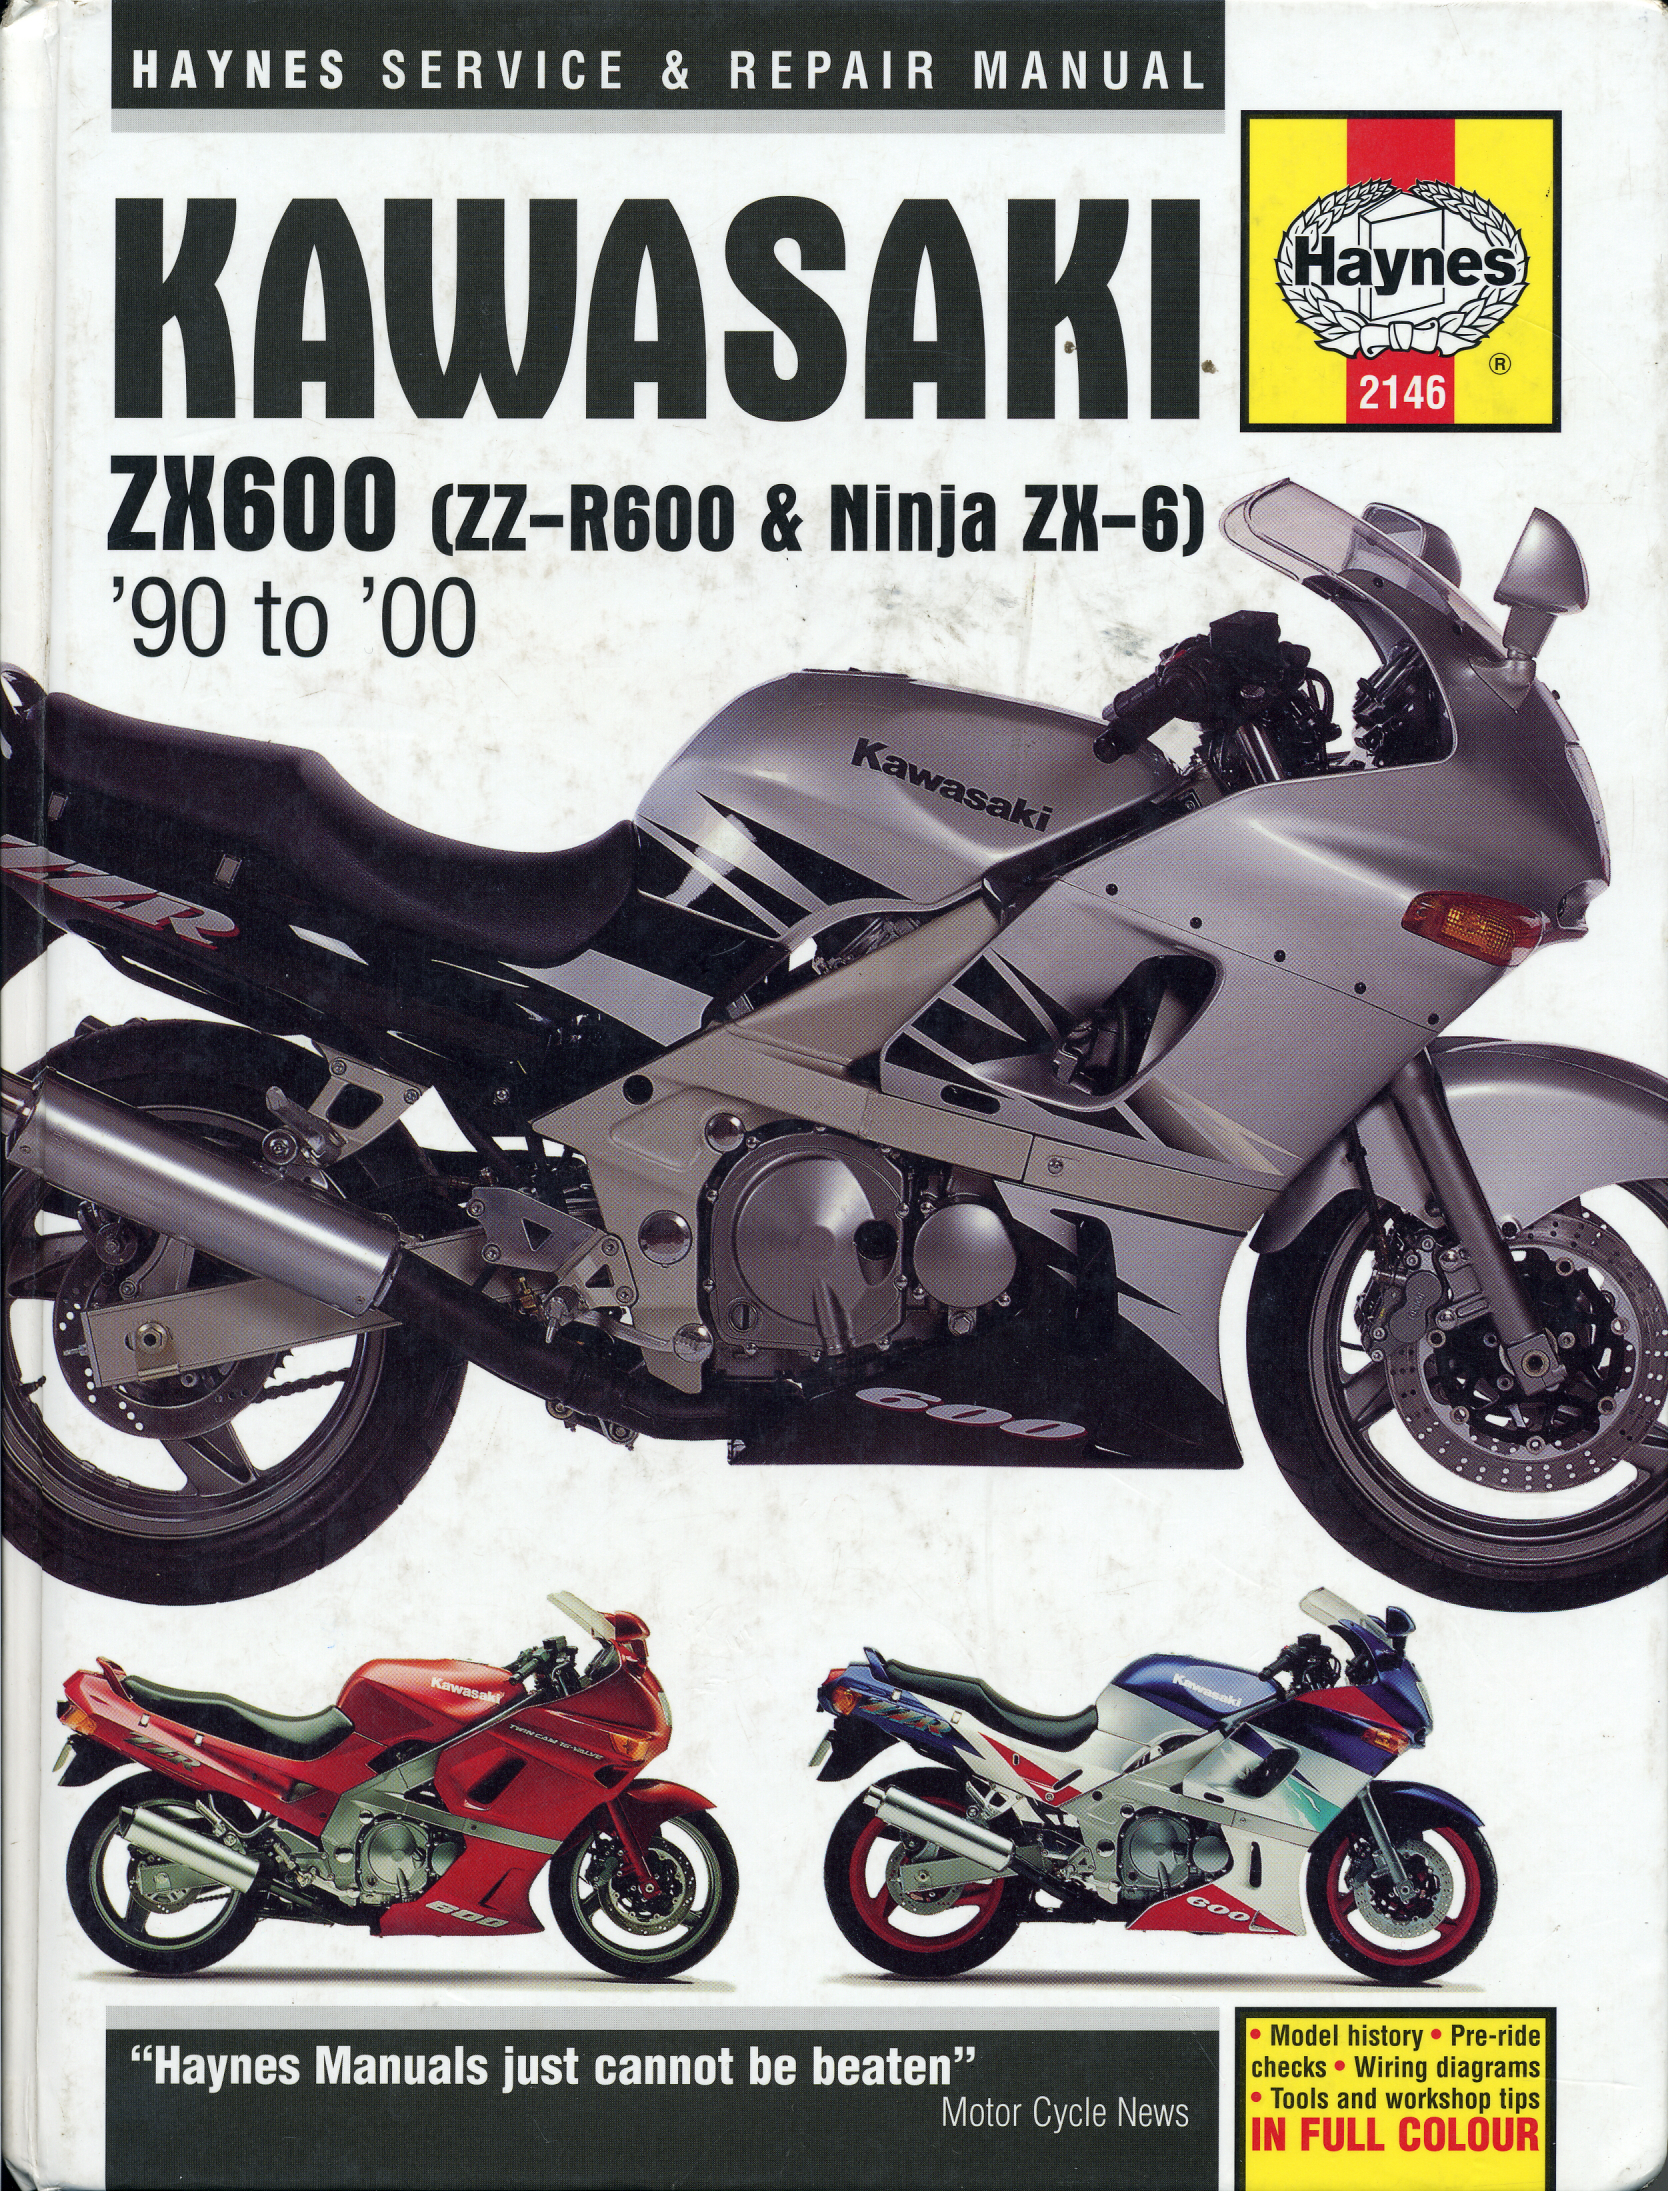 原版英文1990-2000年川崎ZZ-R600 kawasaki zzr600 维修手册插图